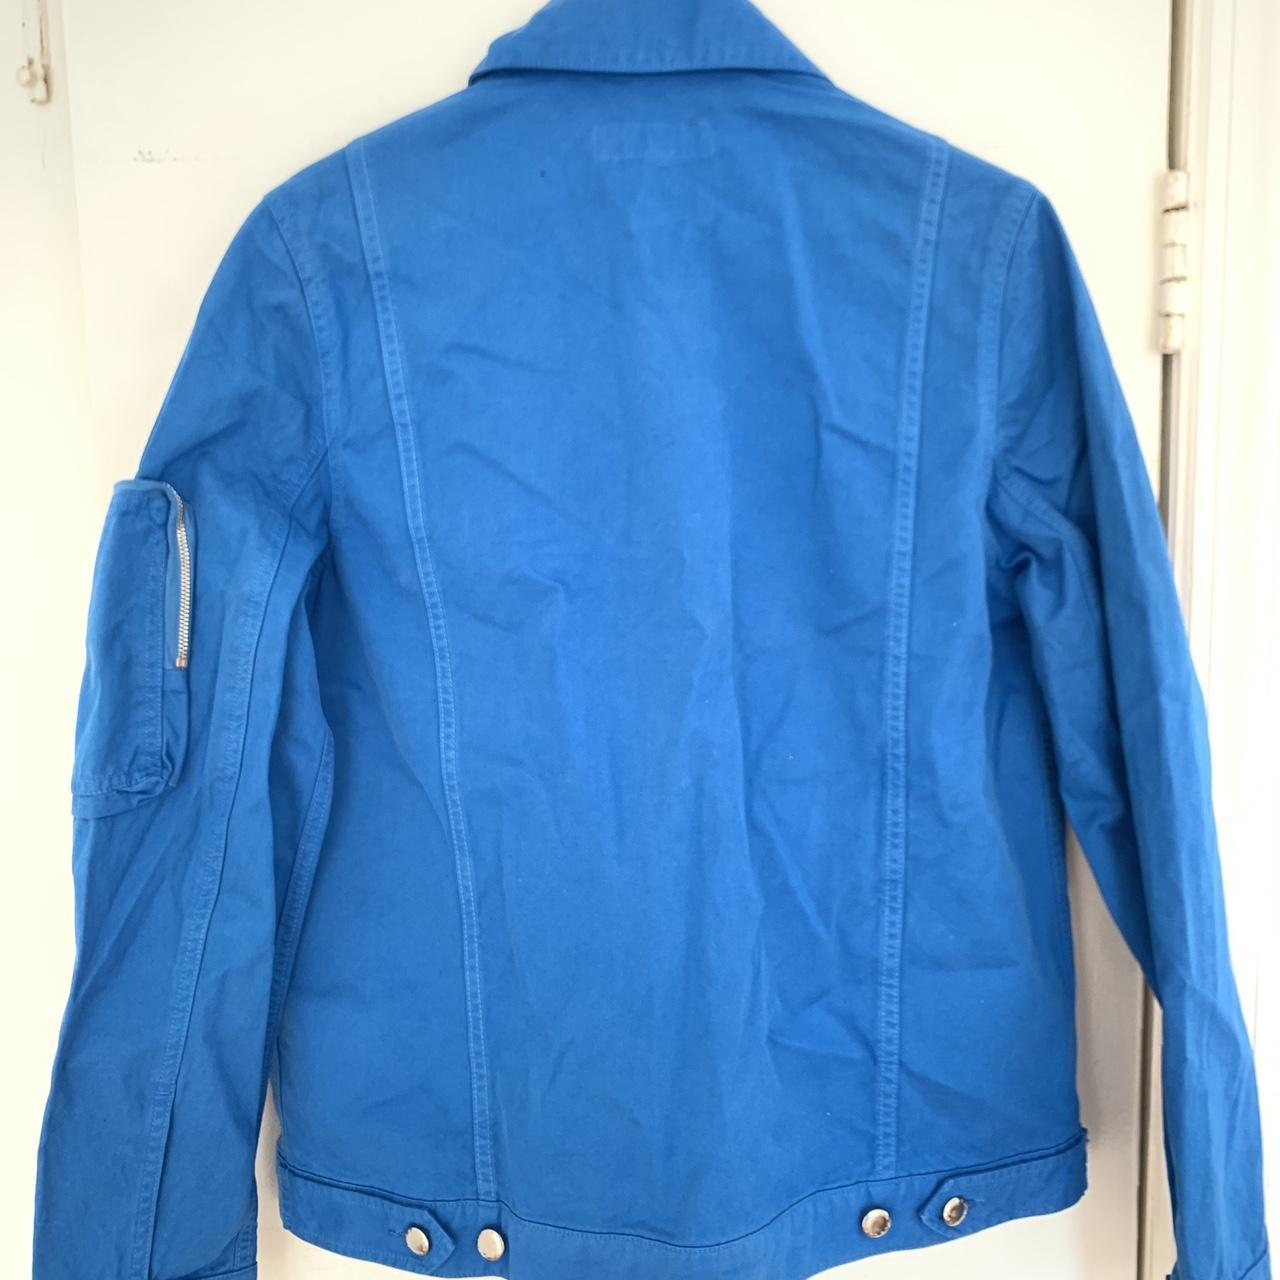 Eckhaus Latta Women's Blue Jacket | Depop